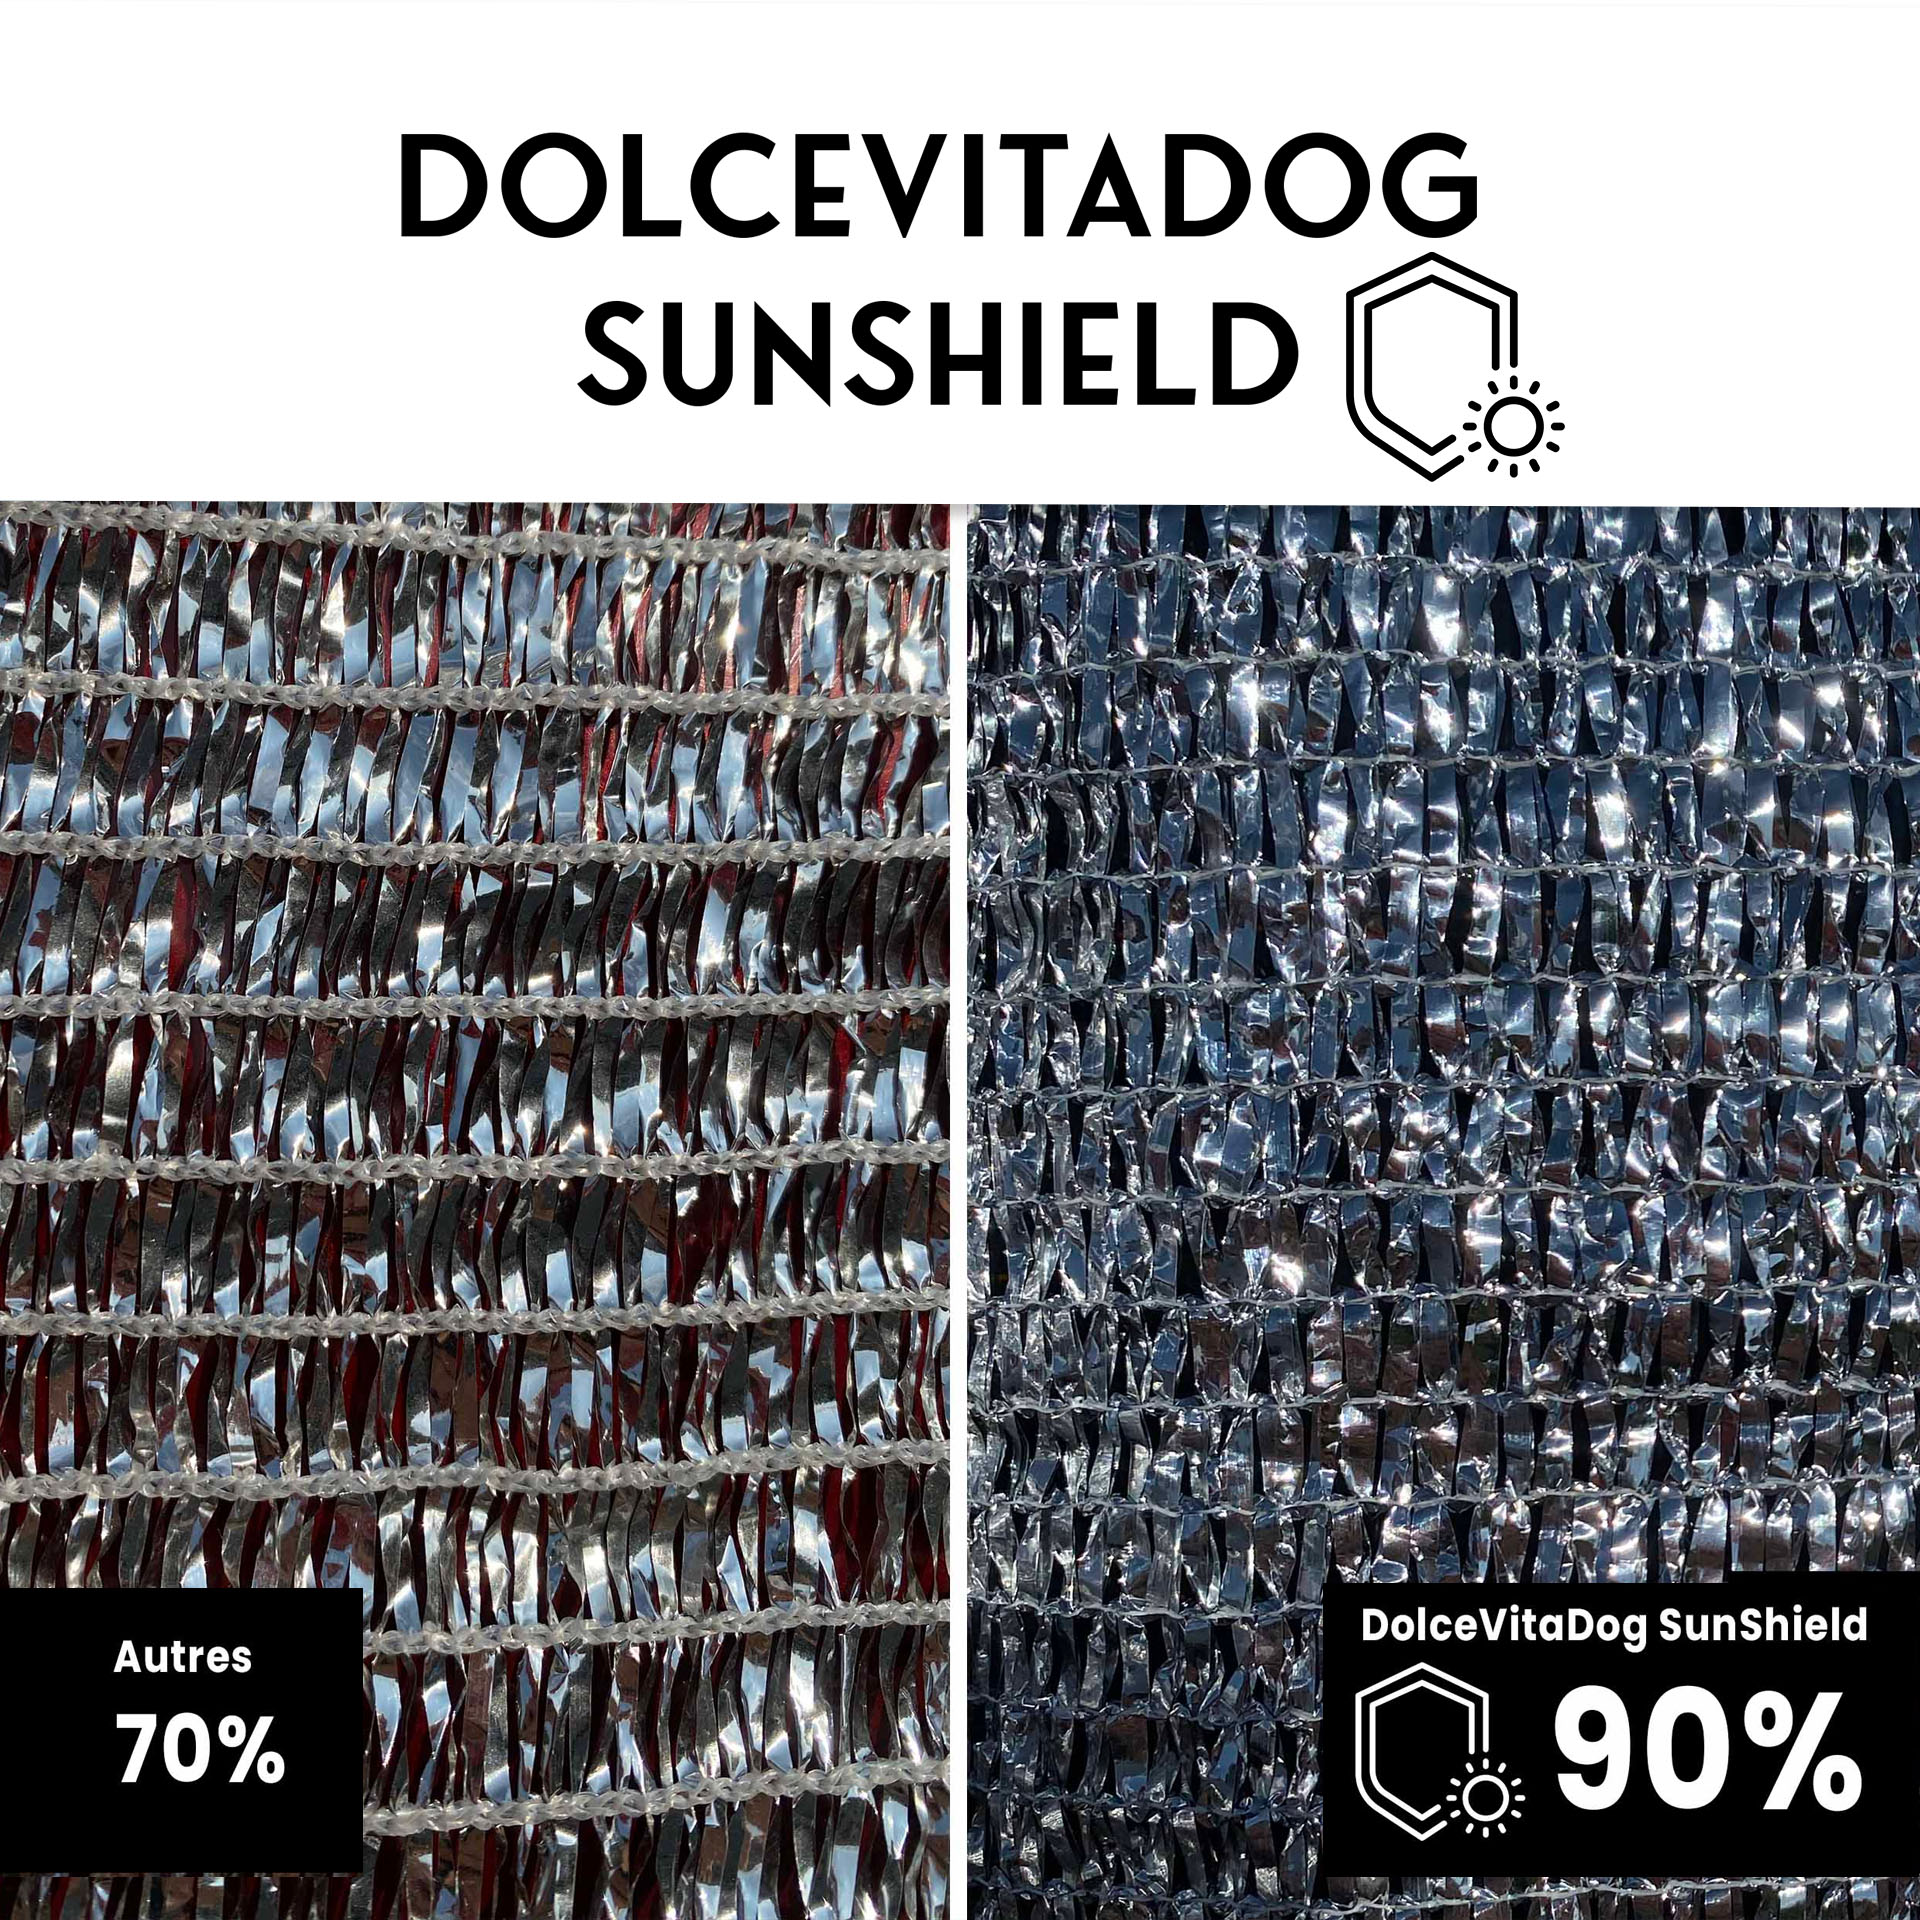 DolceVitaDog SunShield Comparaison